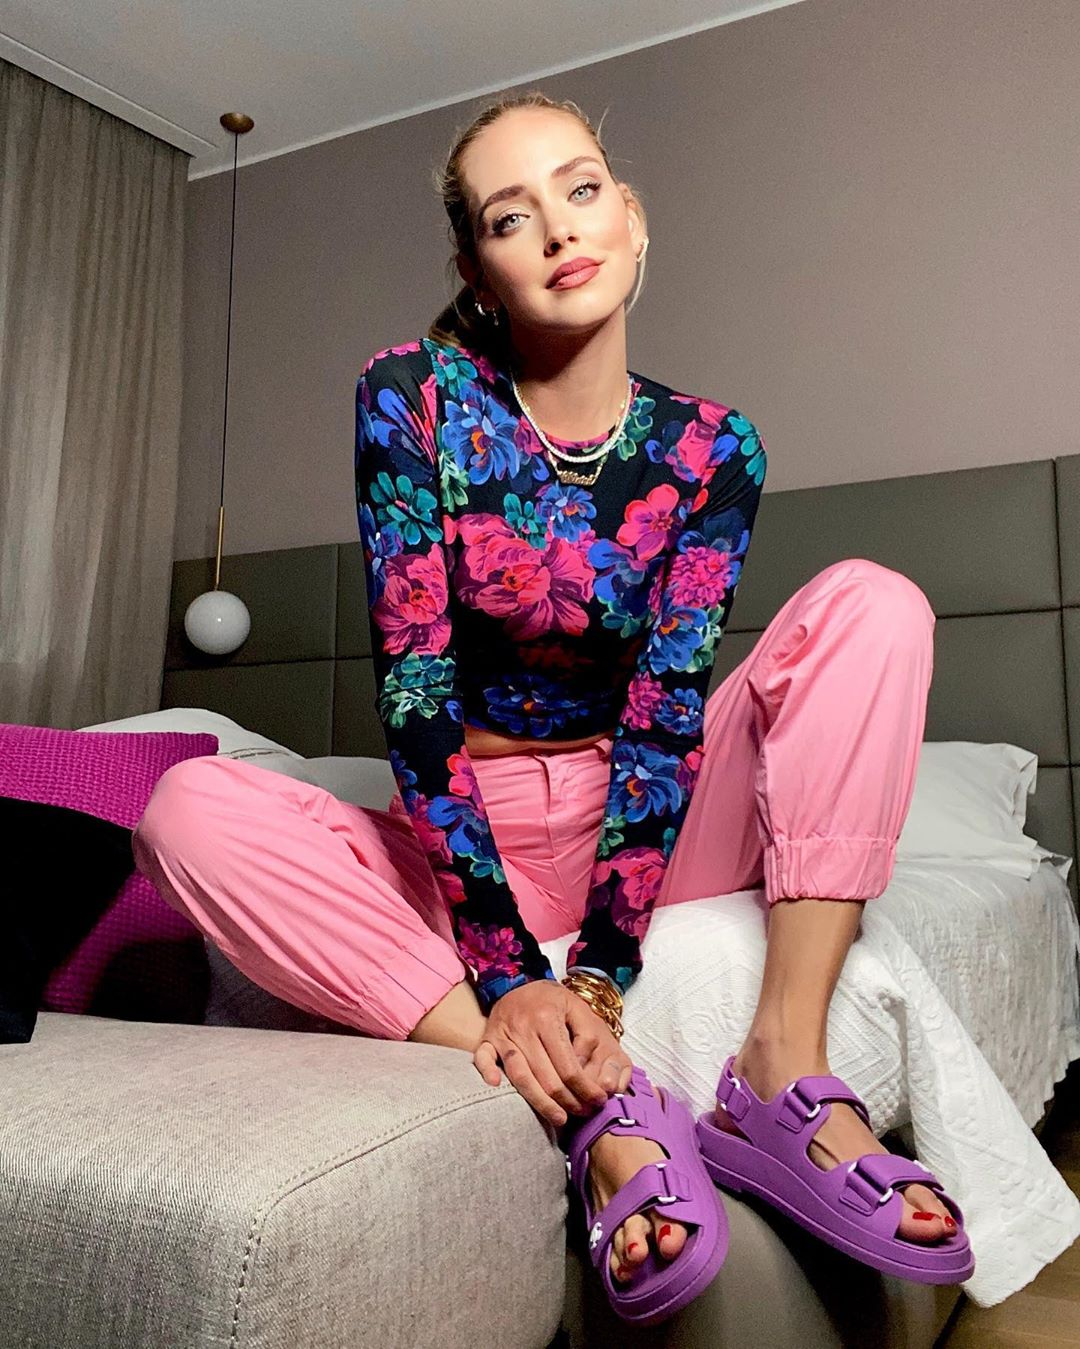 La modelo internacional Chiara Ferragni posa sentada sobre su cama mirando a cámara, mientras enseña unas sandalias de plataforma de color morado.